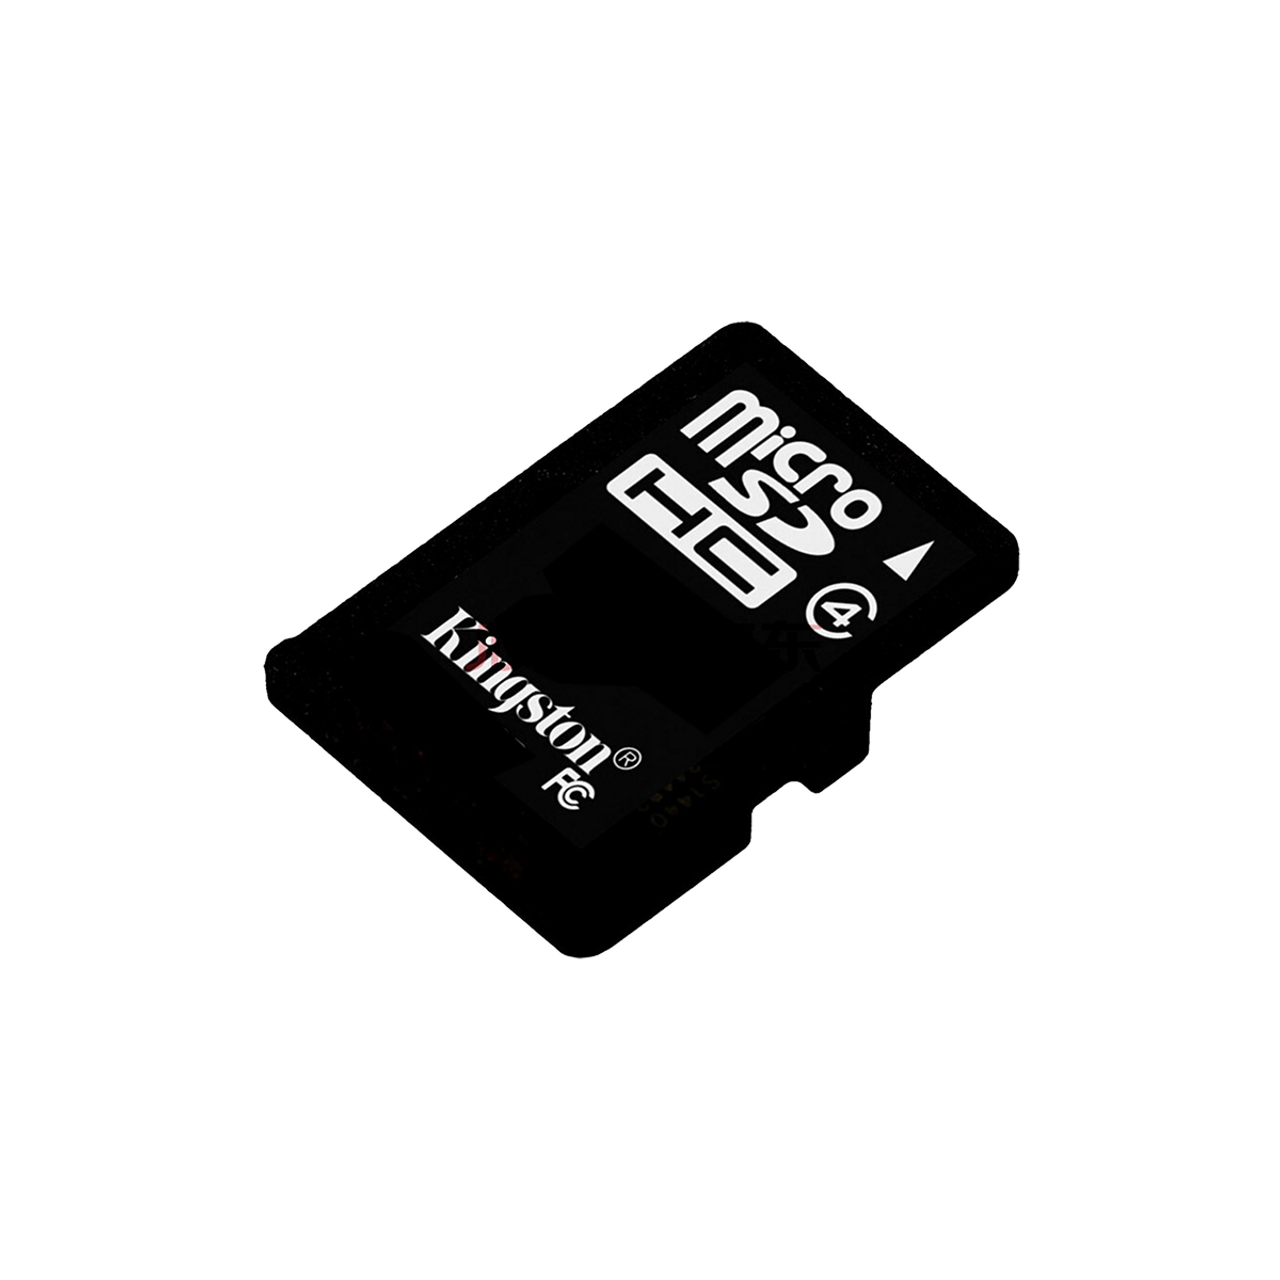 Genuine Kingston 4GB Class 4 Micro SD TF Memory Card SDHC card Sd card Adaptor